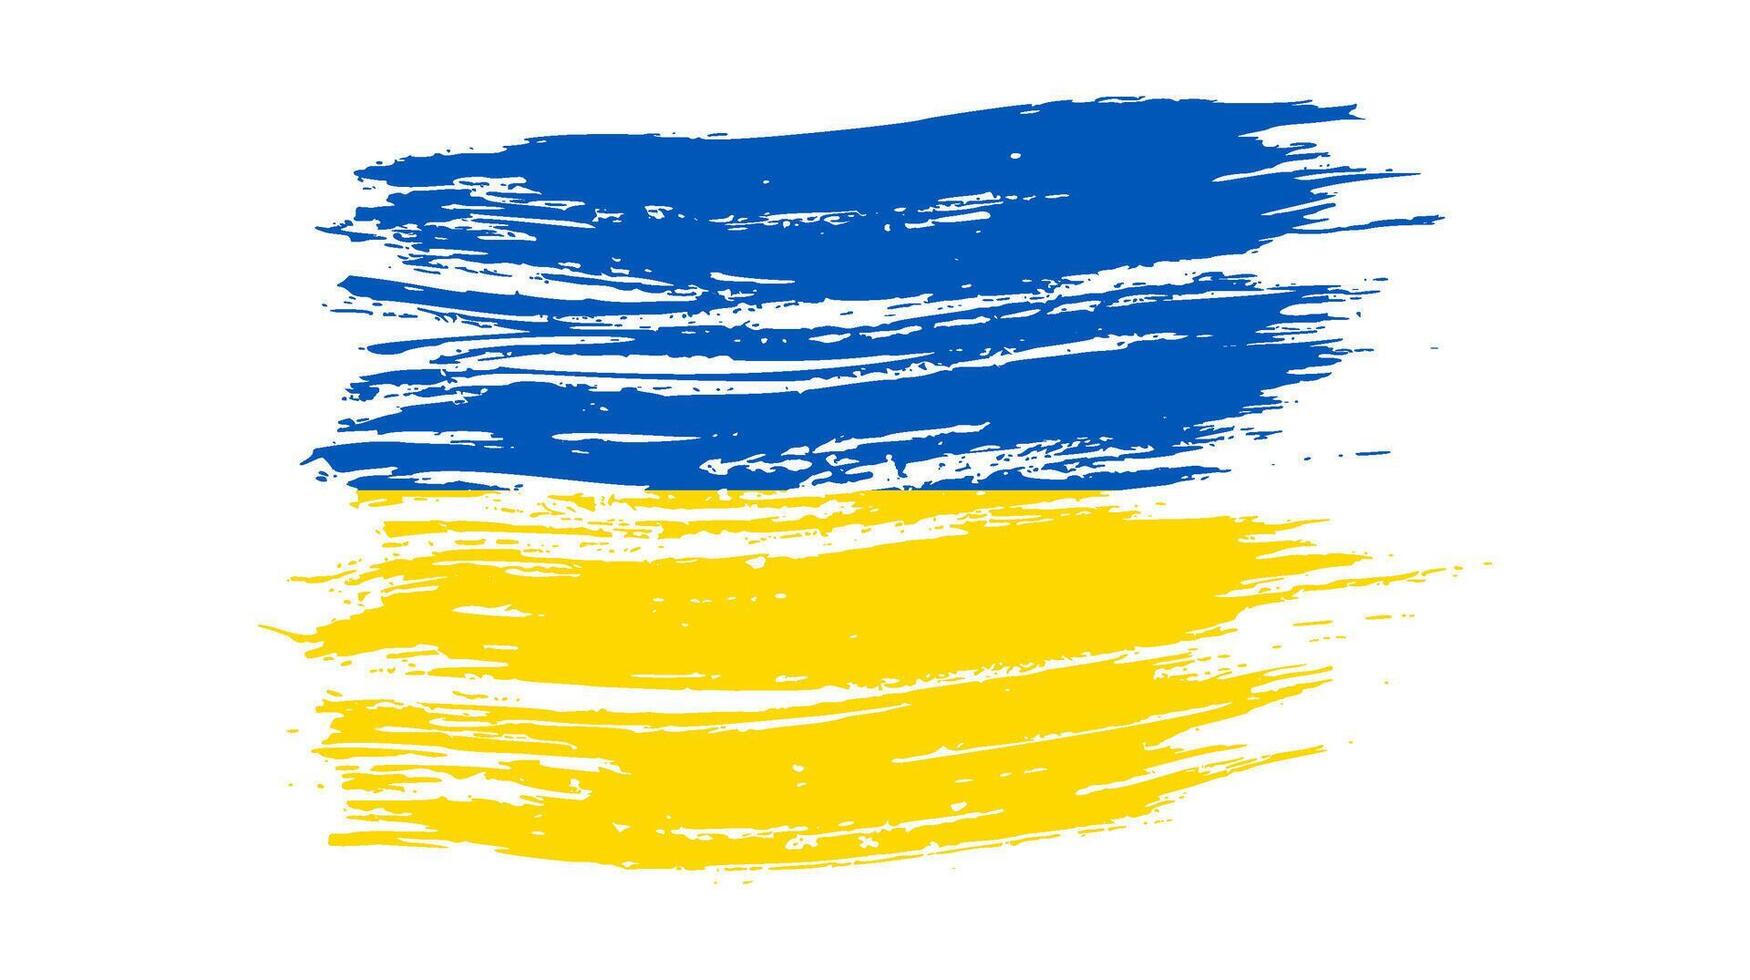 drapeau national ukrainien dans le style grunge vecteur